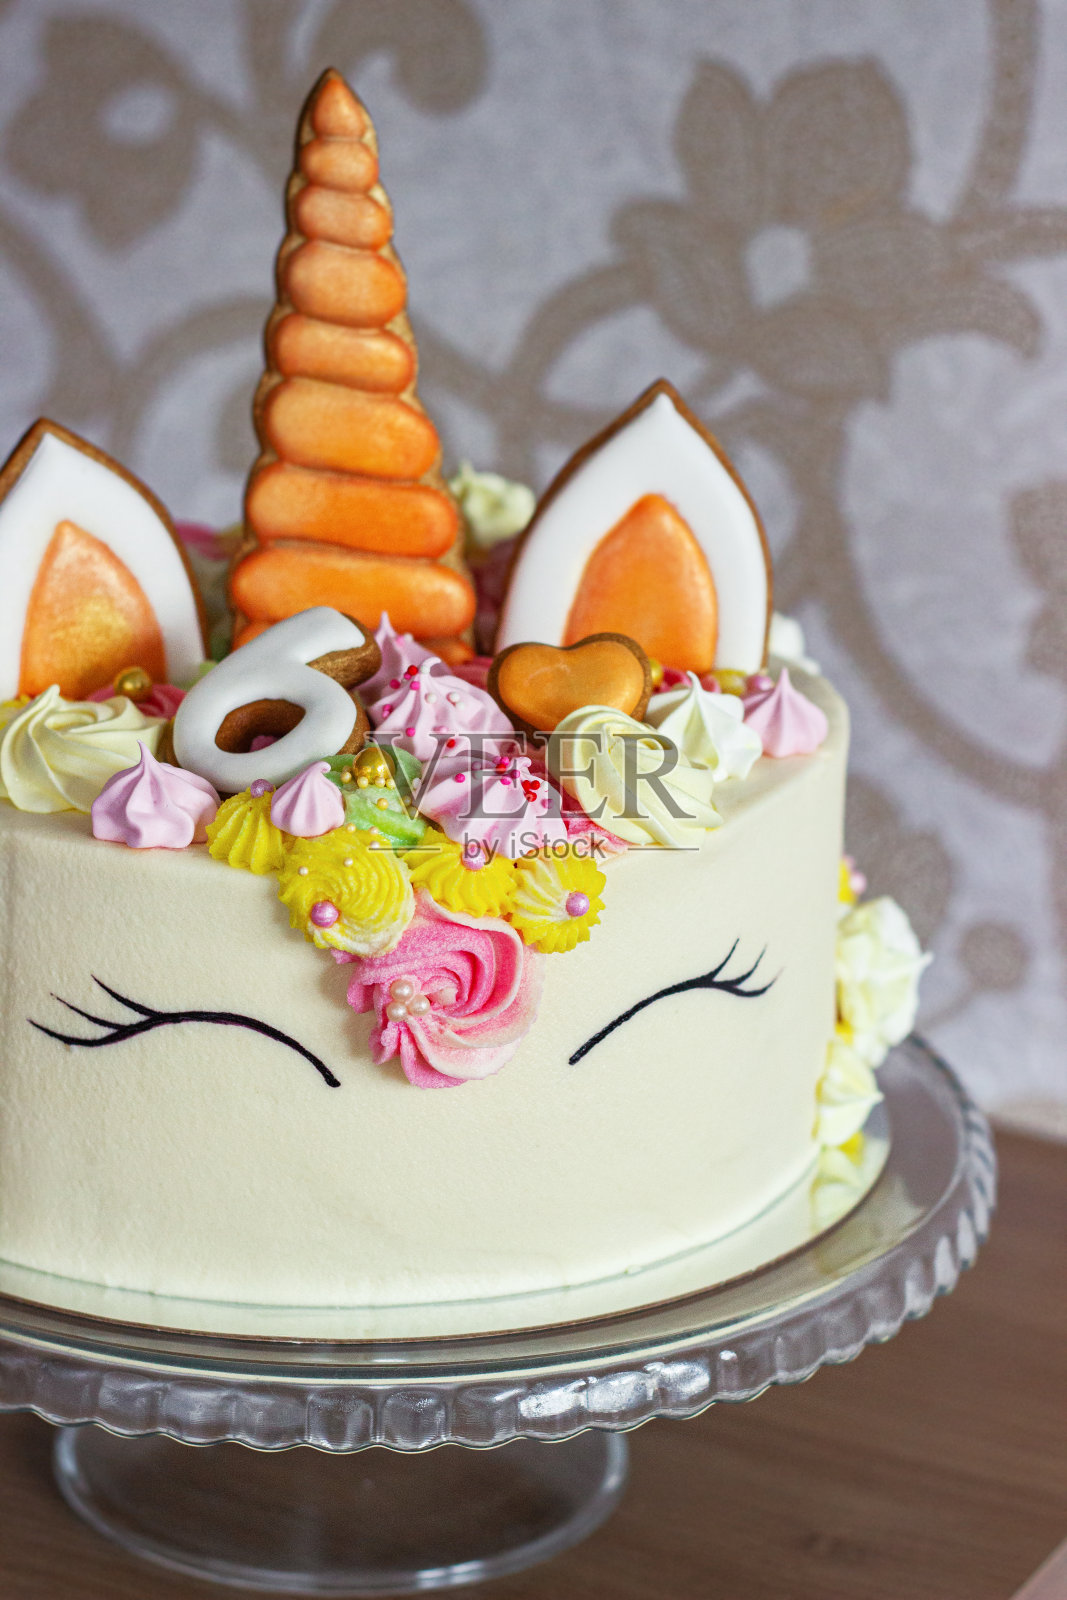 一个美丽明亮的蛋糕装饰在幻想独角兽的形式。为孩子们的生日设计的节日甜点照片摄影图片